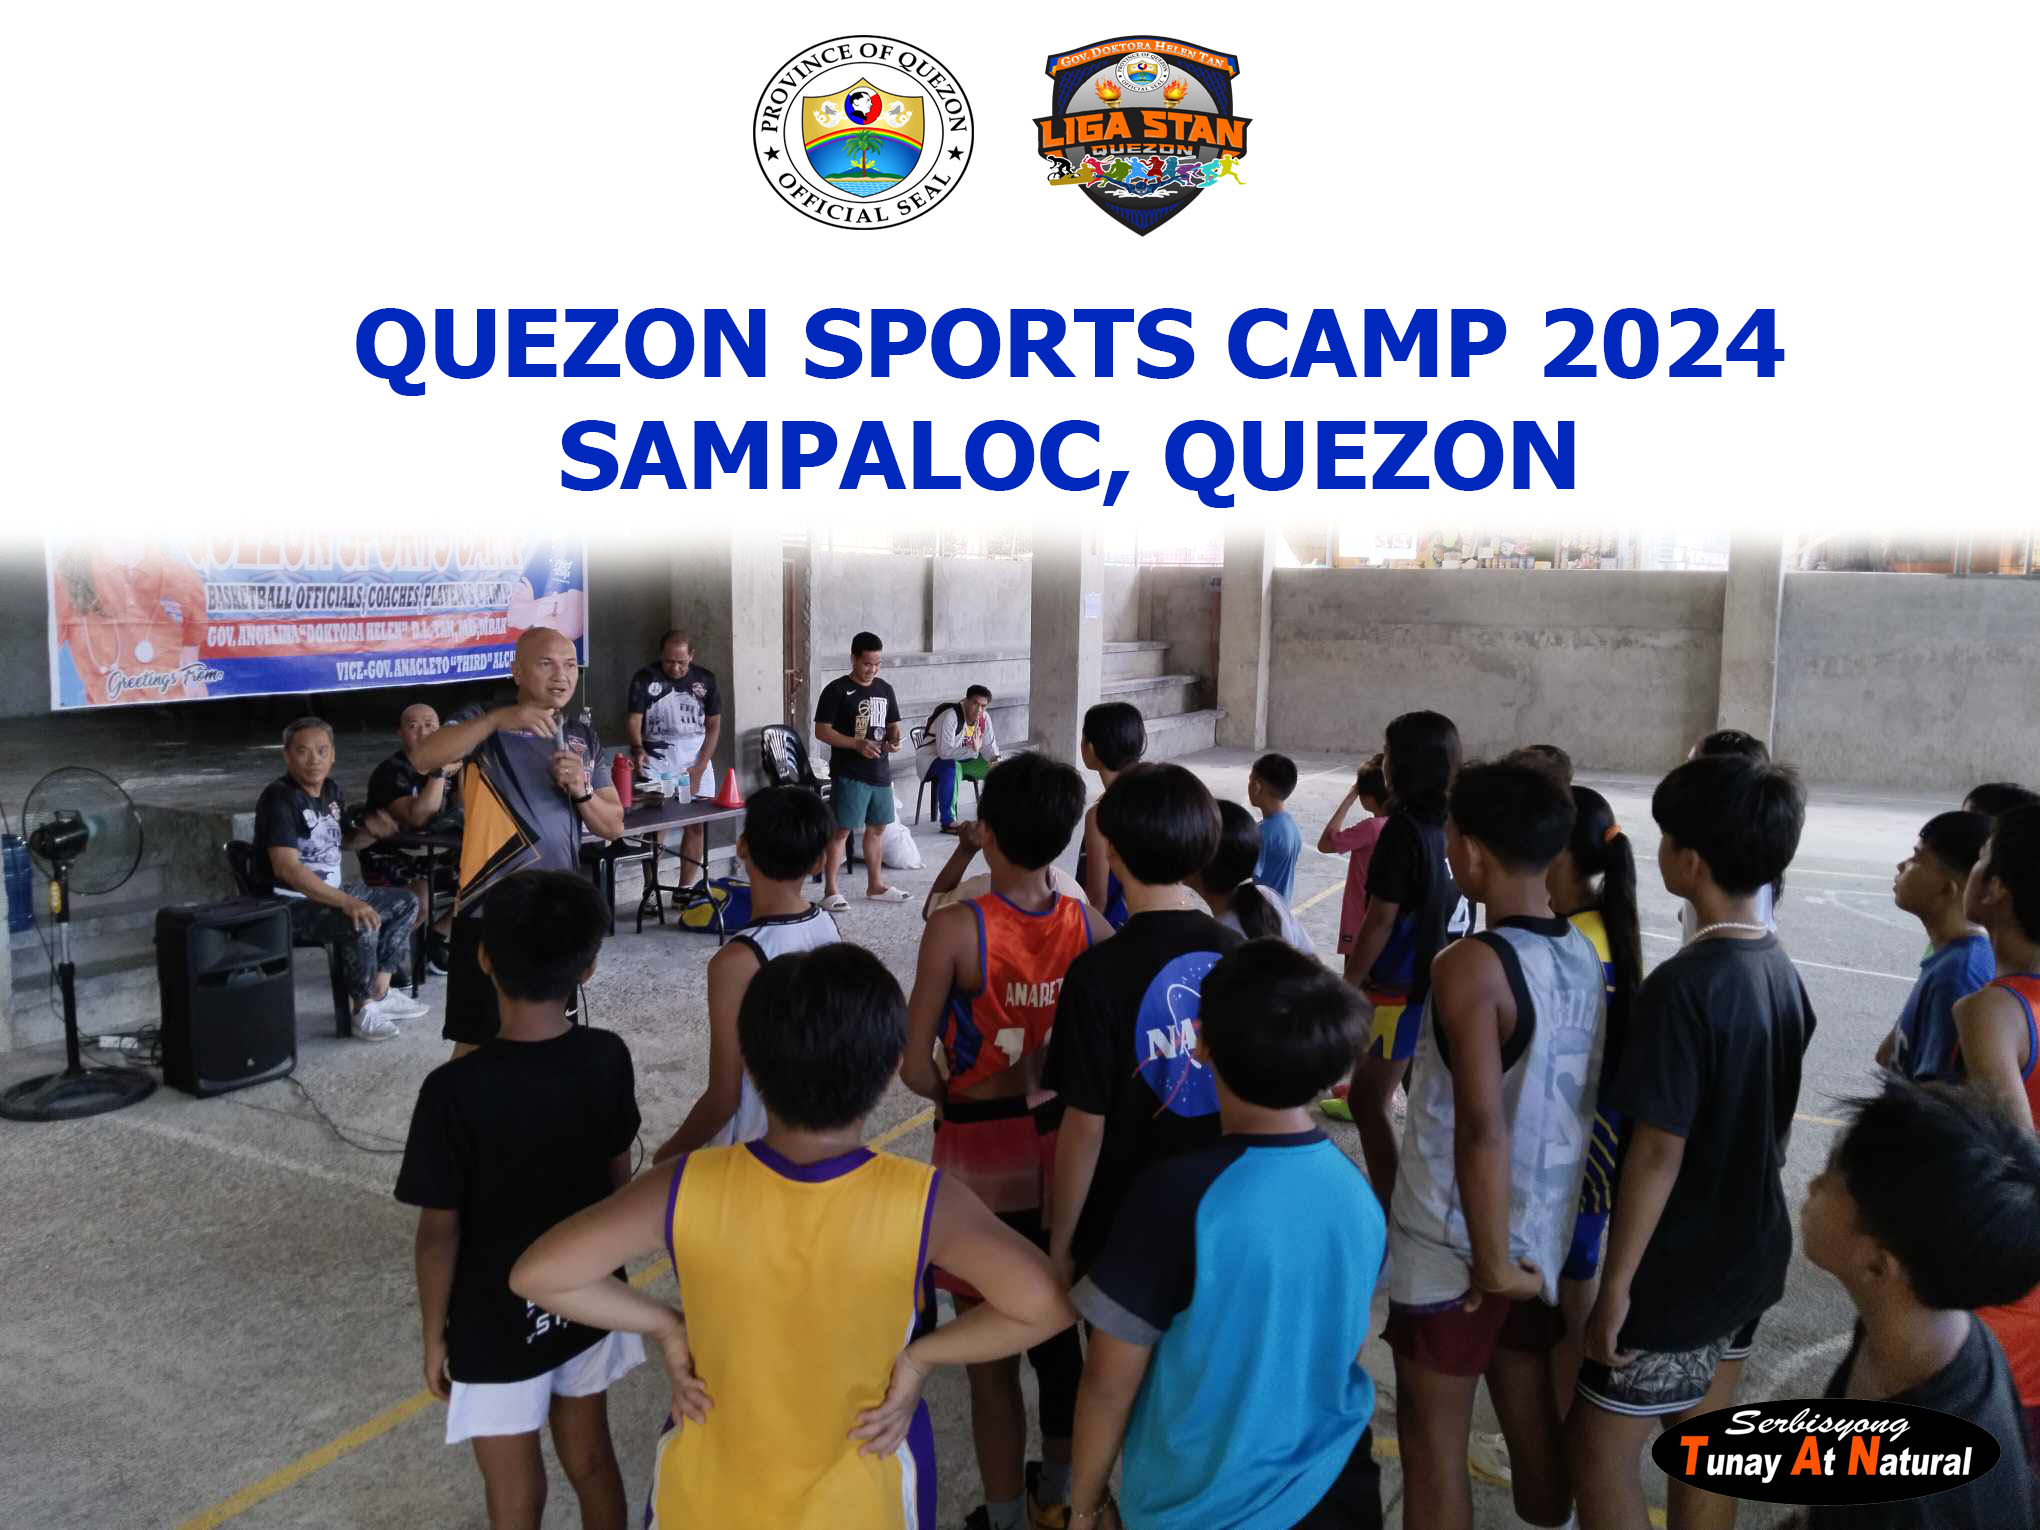 Quezon Sports Camp 2024 – Sampaloc, Quezon